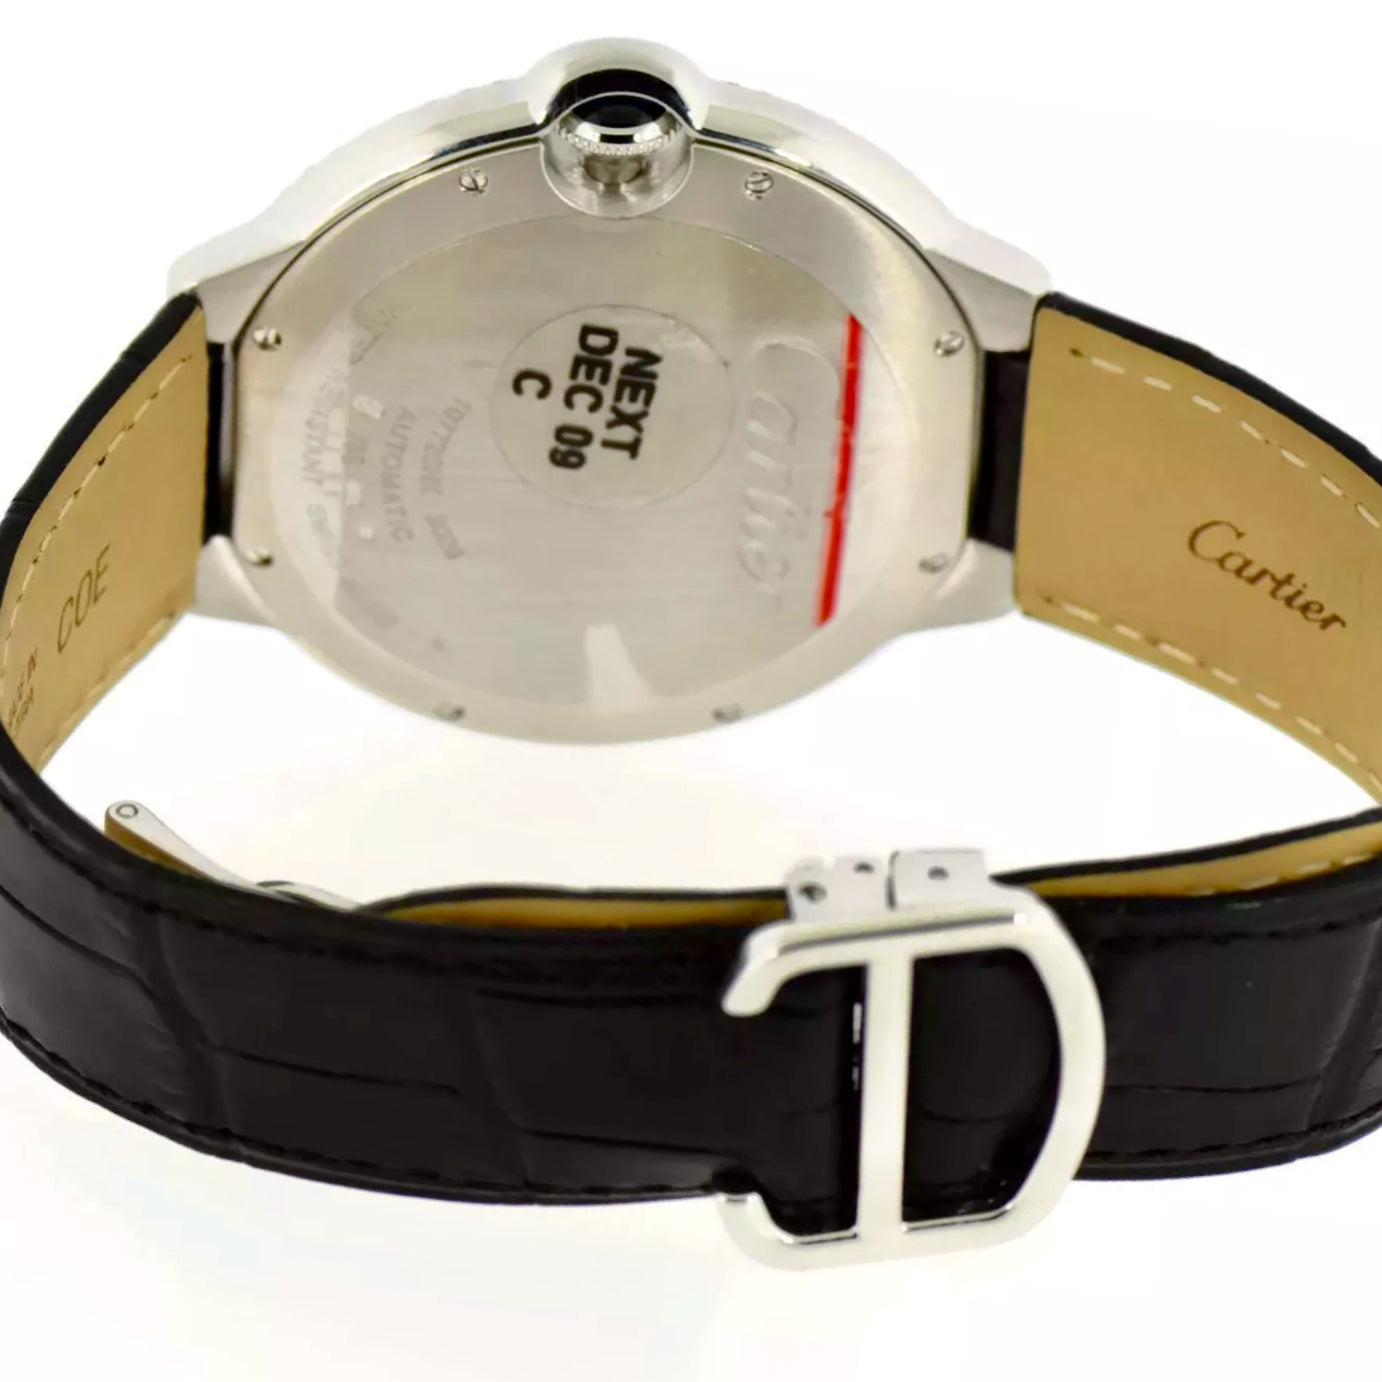 CARTIER BALLON BLEU Automatic 42mm Steel Watch 2TCW+ DIAMONDS Cartier Band